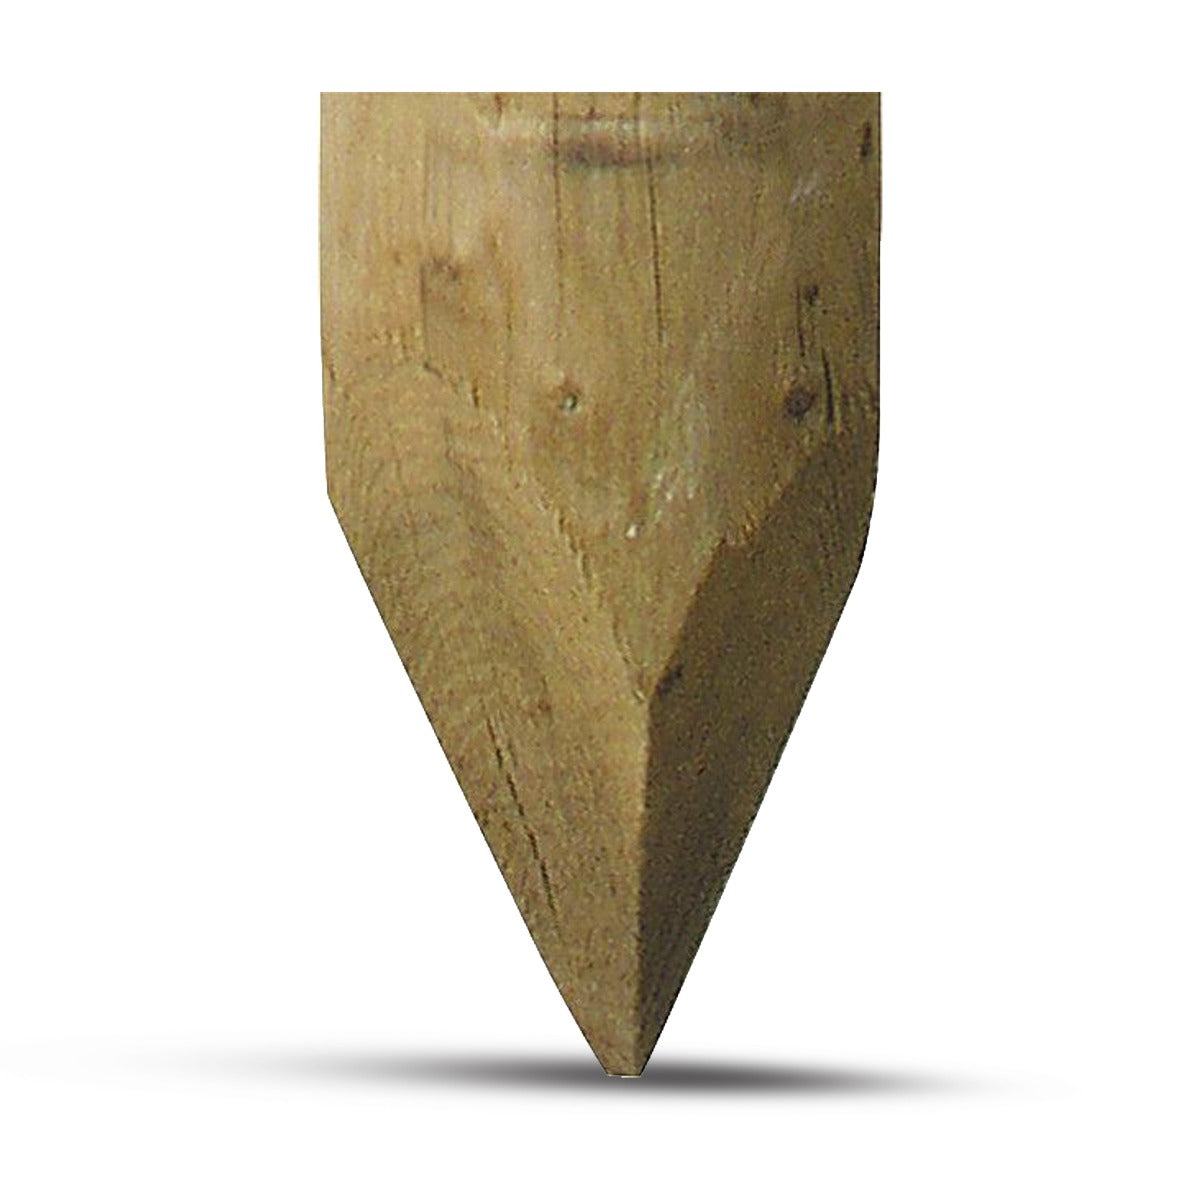 Palo in legno, diametro 16-18 cm 2,25 m